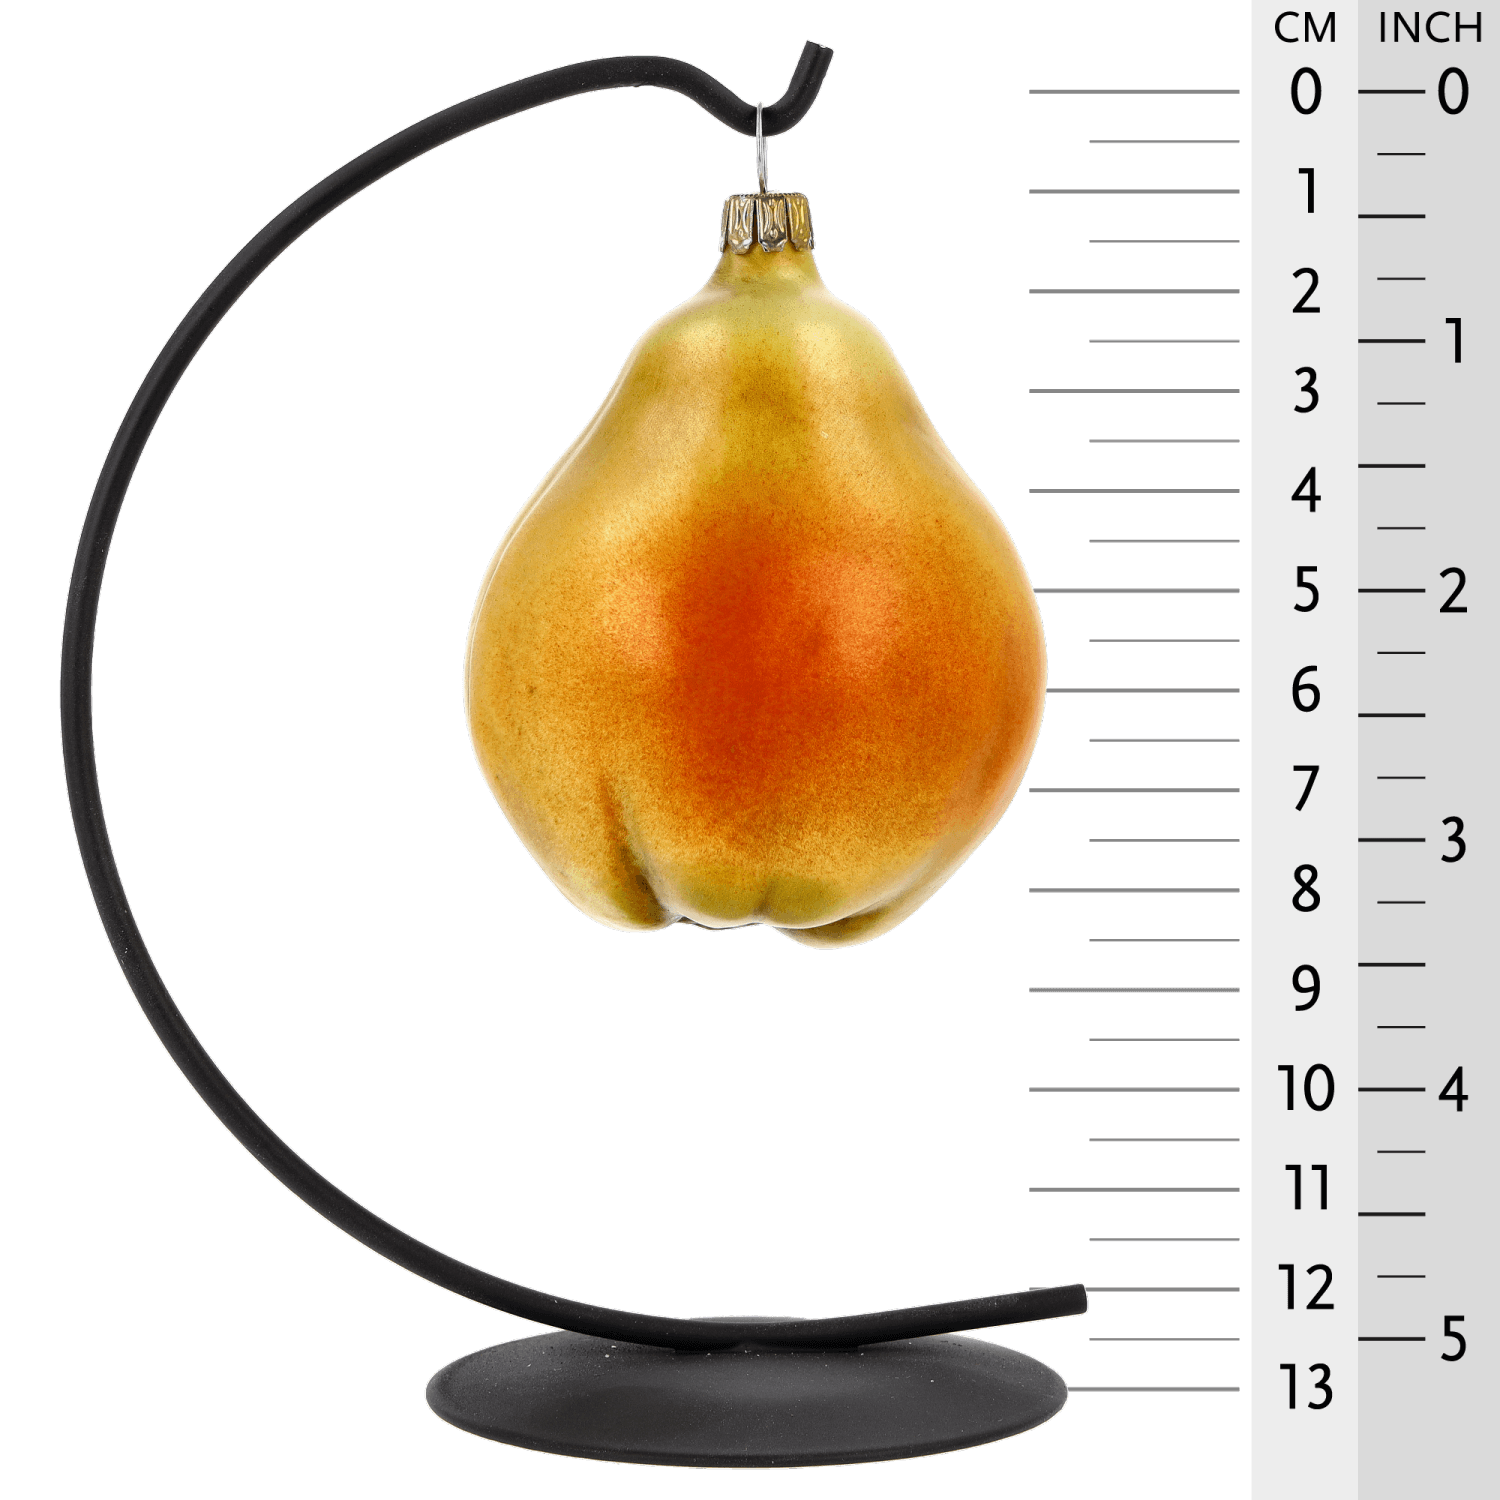 MAROLIN® - Glass ornament "Pear"